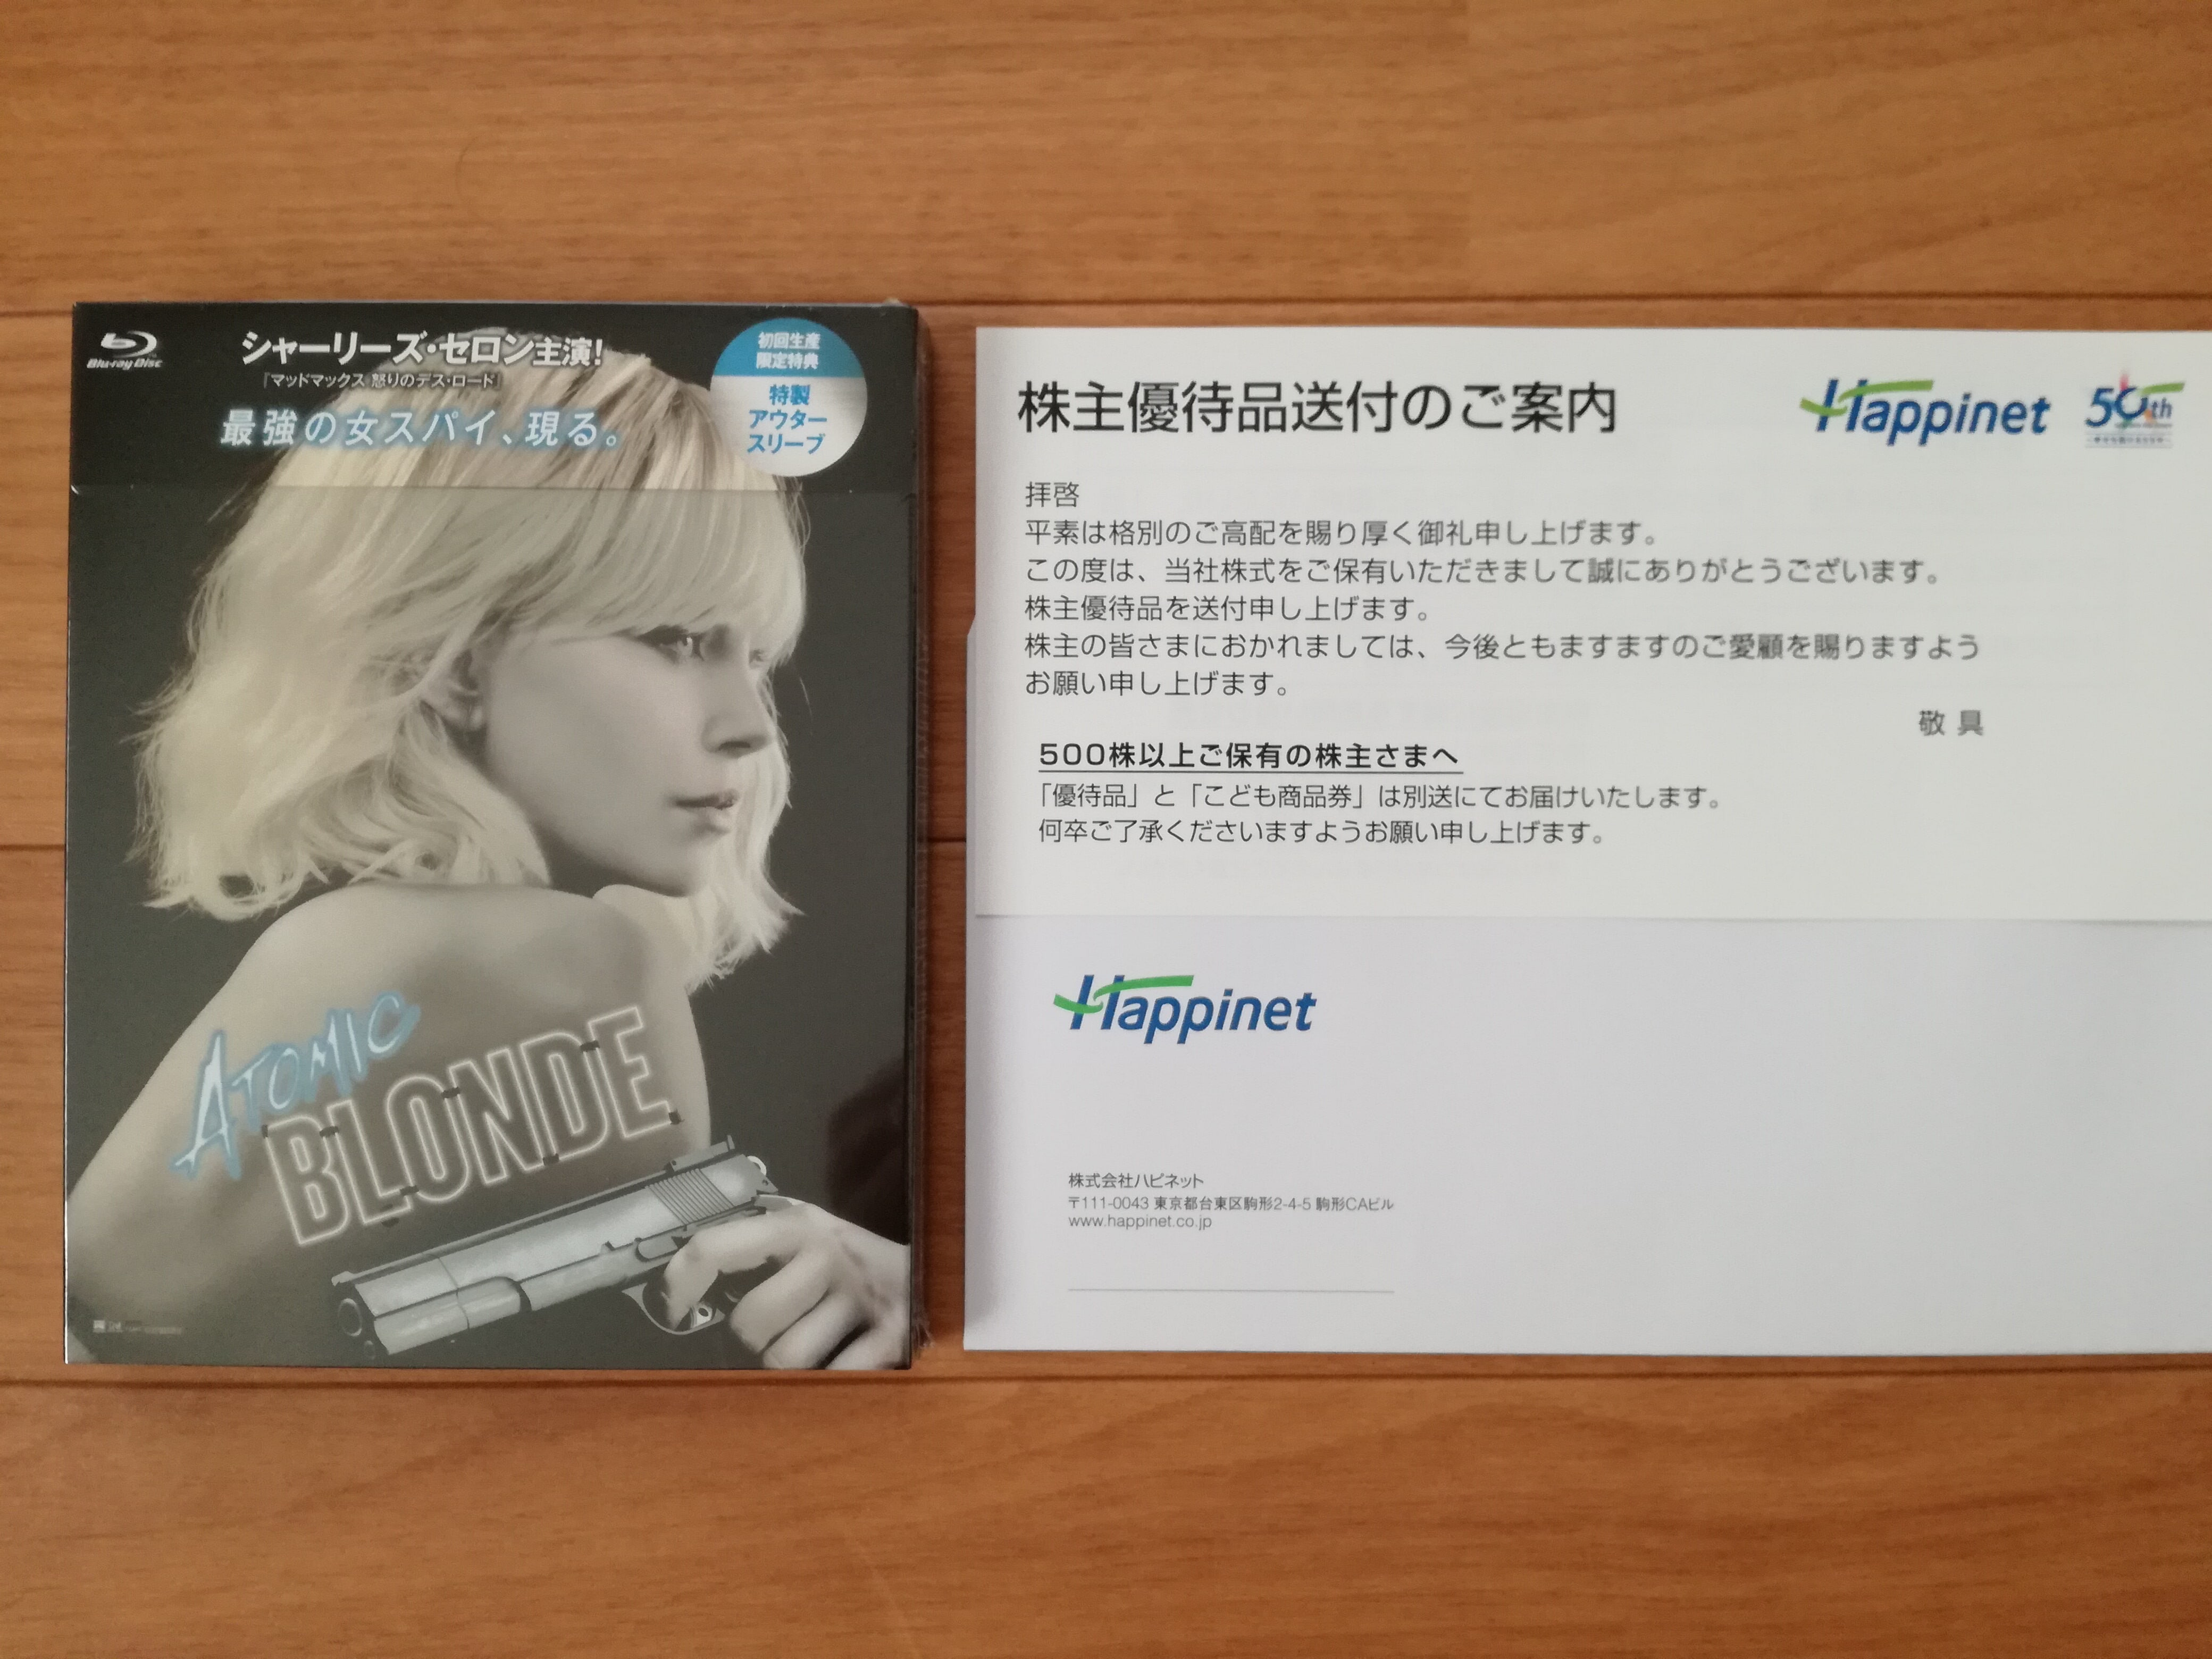 ハピネット（7552）の株主優待カタログで選んだアトミック・ブロンド （Blu-ray）が到着！